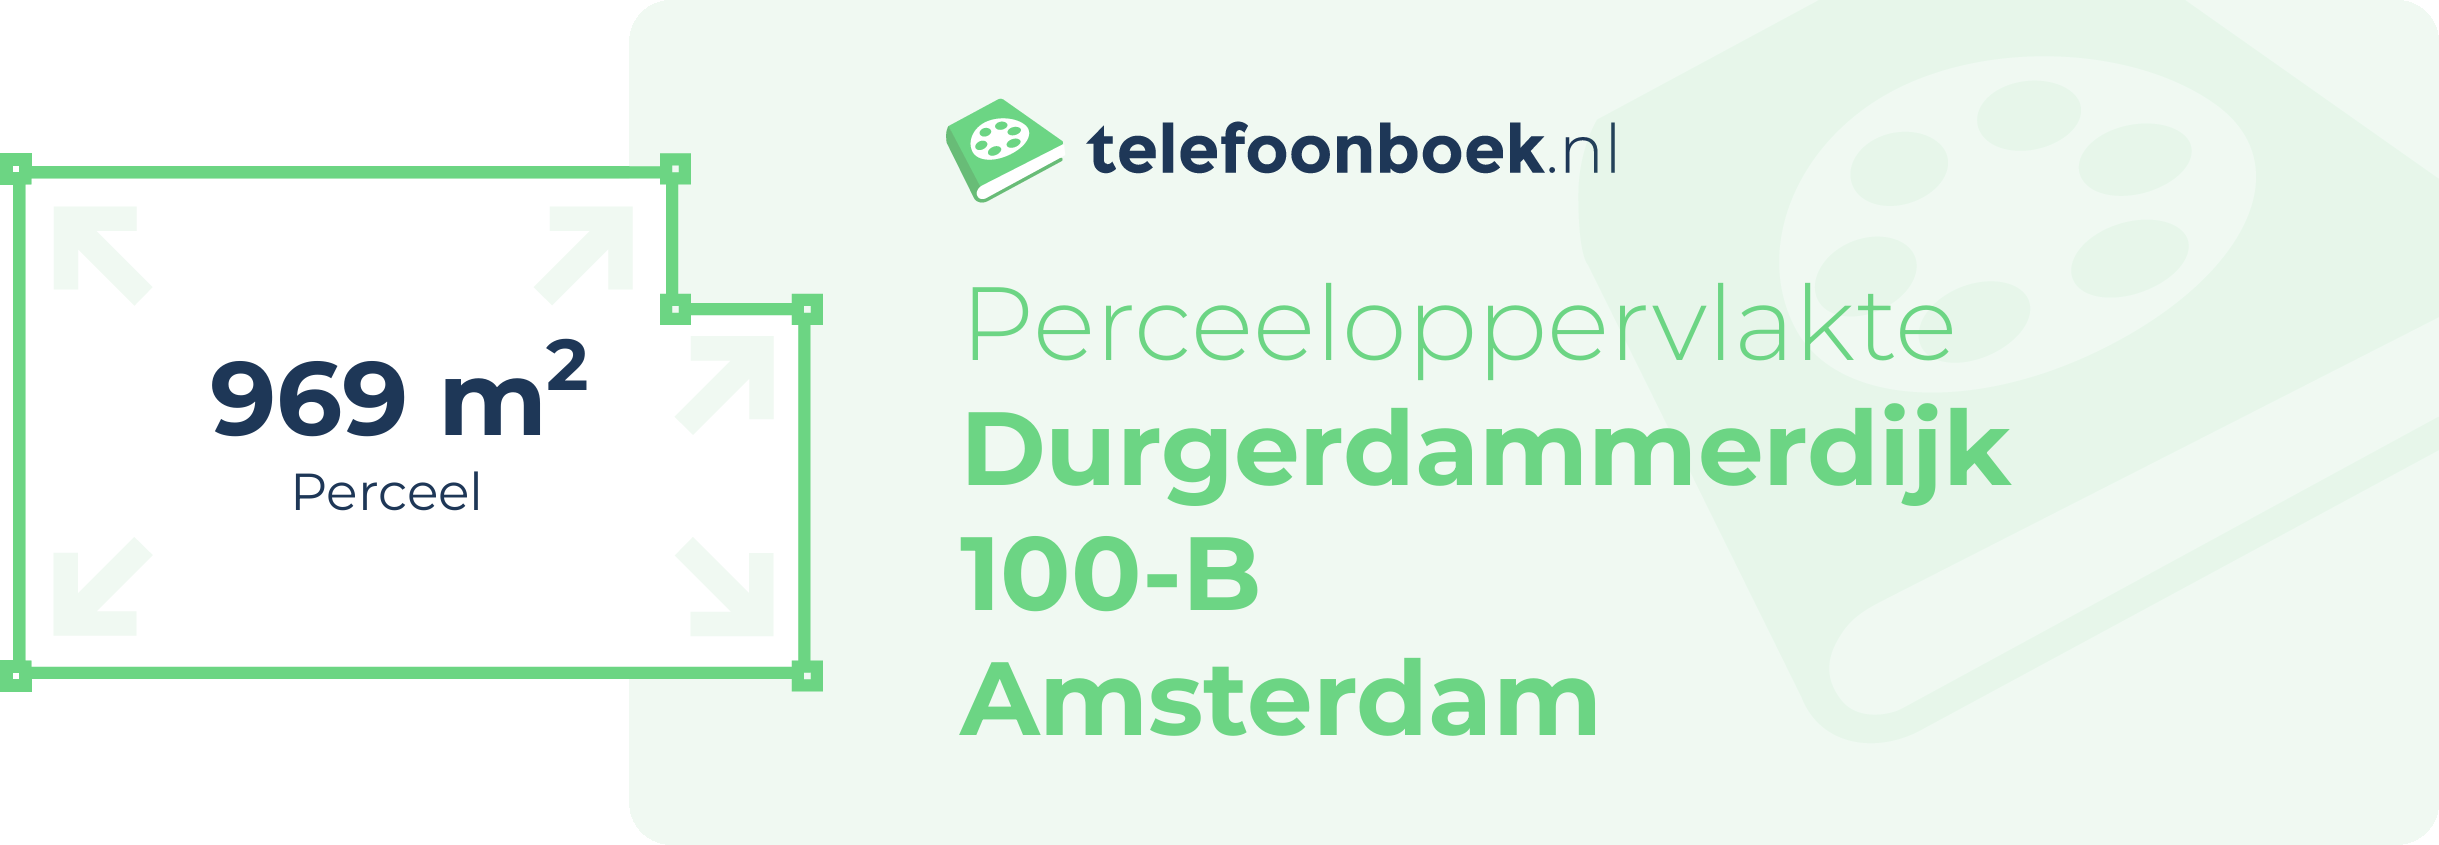 Perceeloppervlakte Durgerdammerdijk 100-B Amsterdam